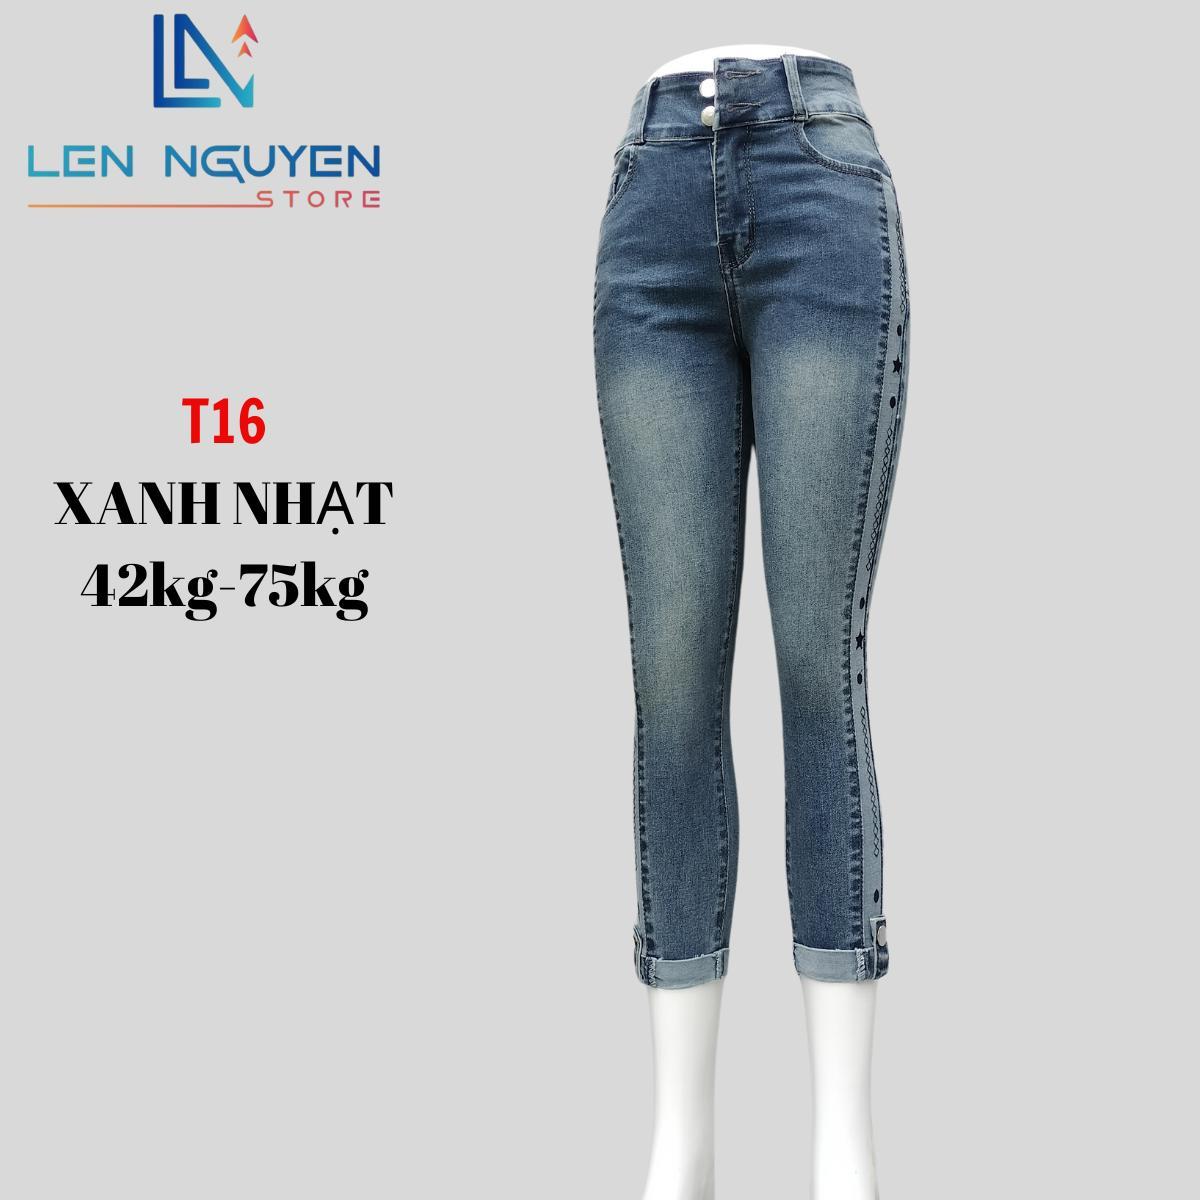 T16_Quần jean nữ lỡ dài 82-83cm thiết kế thêu sườn ,chất liệu vải cao cấp, co giãn